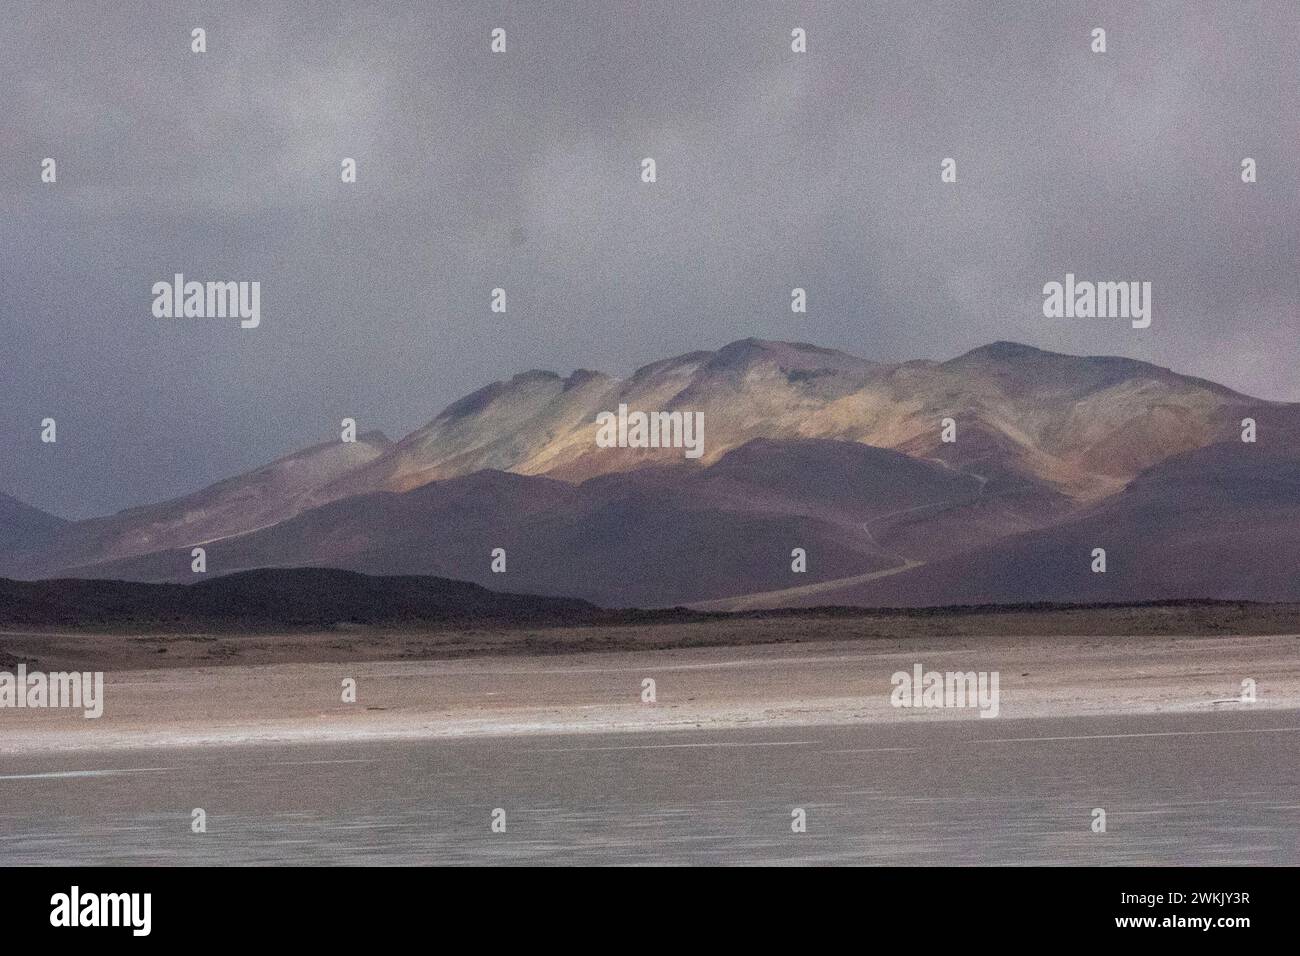 Spektakuläre Landschaften von Uyuni in Bolivien, Südamerika mit Wüstenwegen, Bergen und dramatischen Wolken Stockfoto